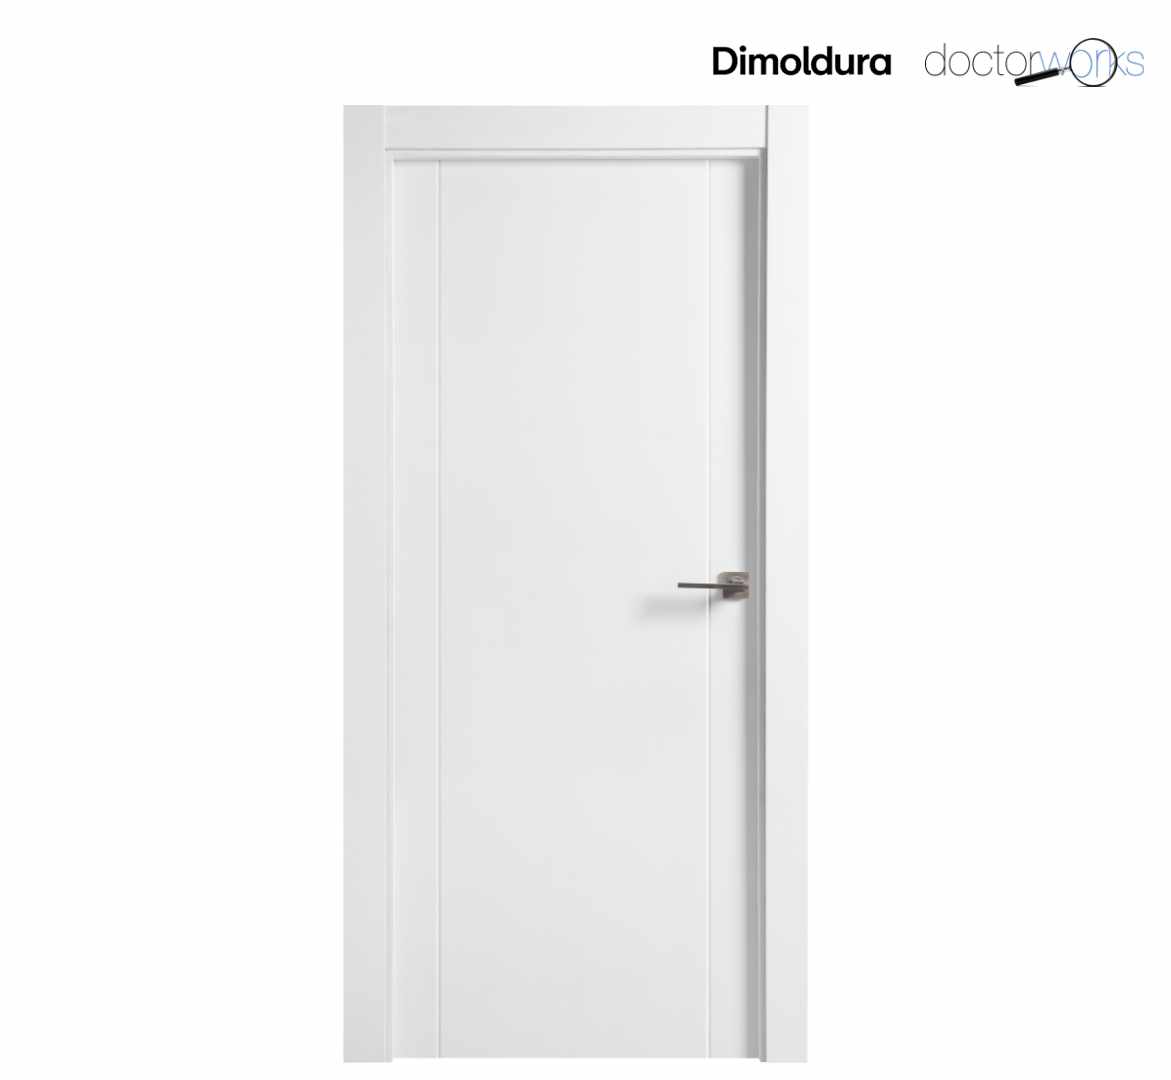 Puerta ciega lacada en blanco mod. 120 de 72,50 cm de ancho. Altura standard 2030 mm